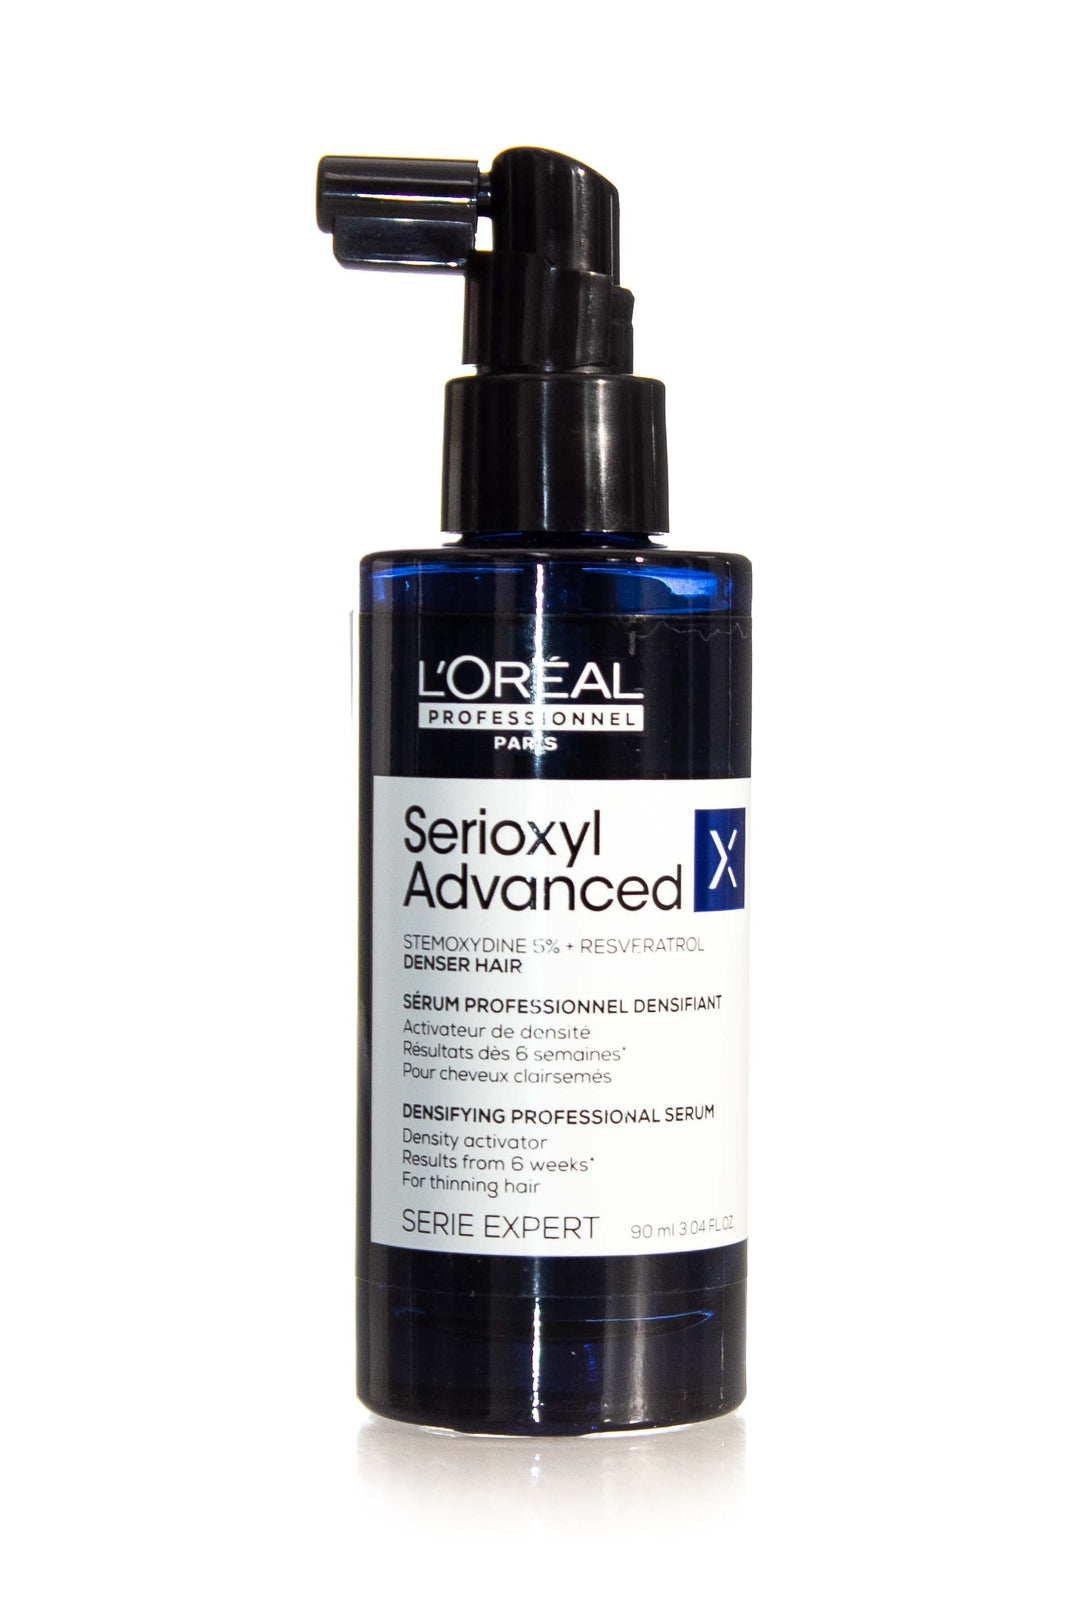 L'Oreal Serioxyl Advanced Denser Hair Serum